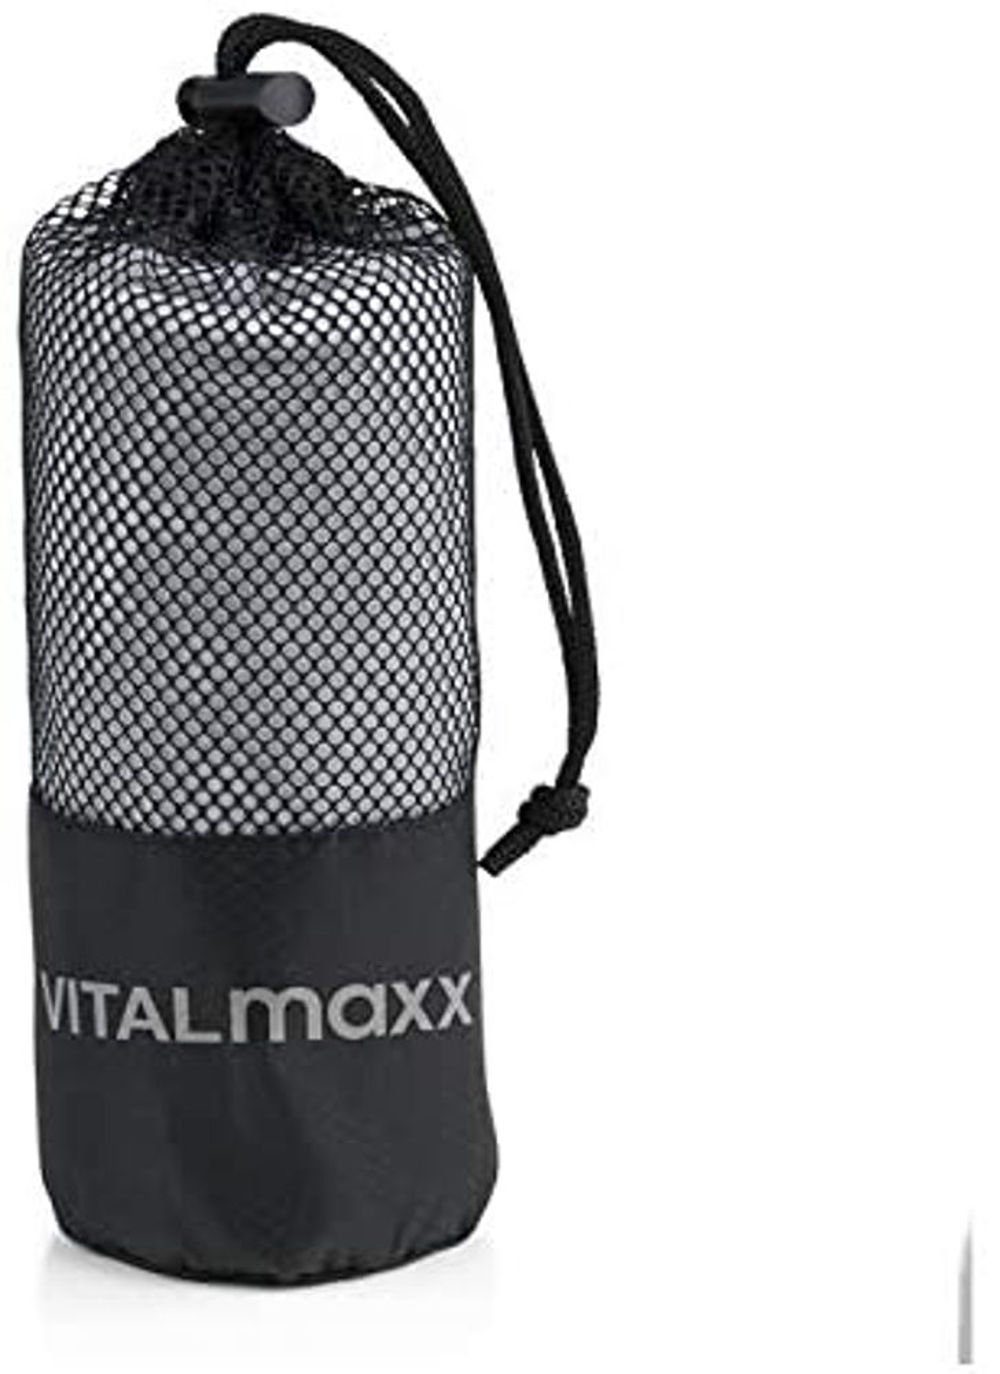 VITALmaxx Sporthandtuch Mikrofaser Handtuch 130 x 80 cm, Mikrofaser (mit  Mash-Bag, 1-St), kompakt, reißfest, besonders saugfähige, für Sport Fitness  Reise Backpacking, Inklusive Mesh-Bag zum Transportieren und Aufbewahren